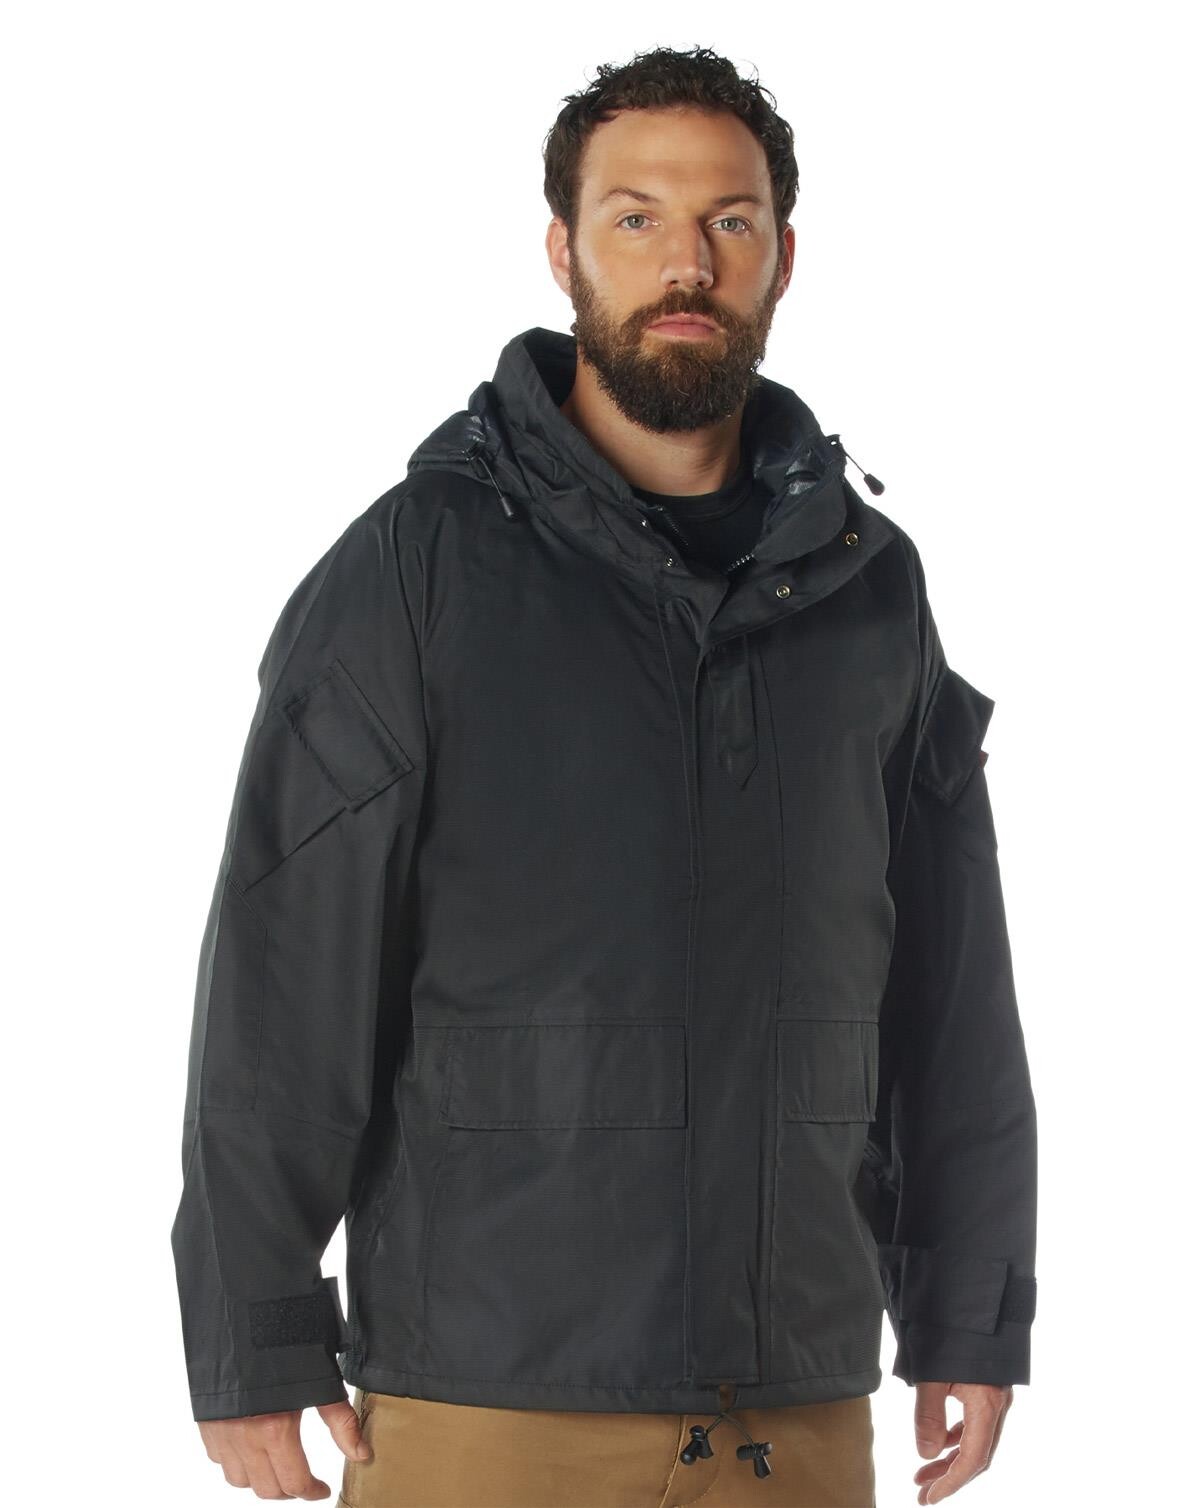 Rothco Tactical Hard Shell Waterproof Jacket (Sort, M)